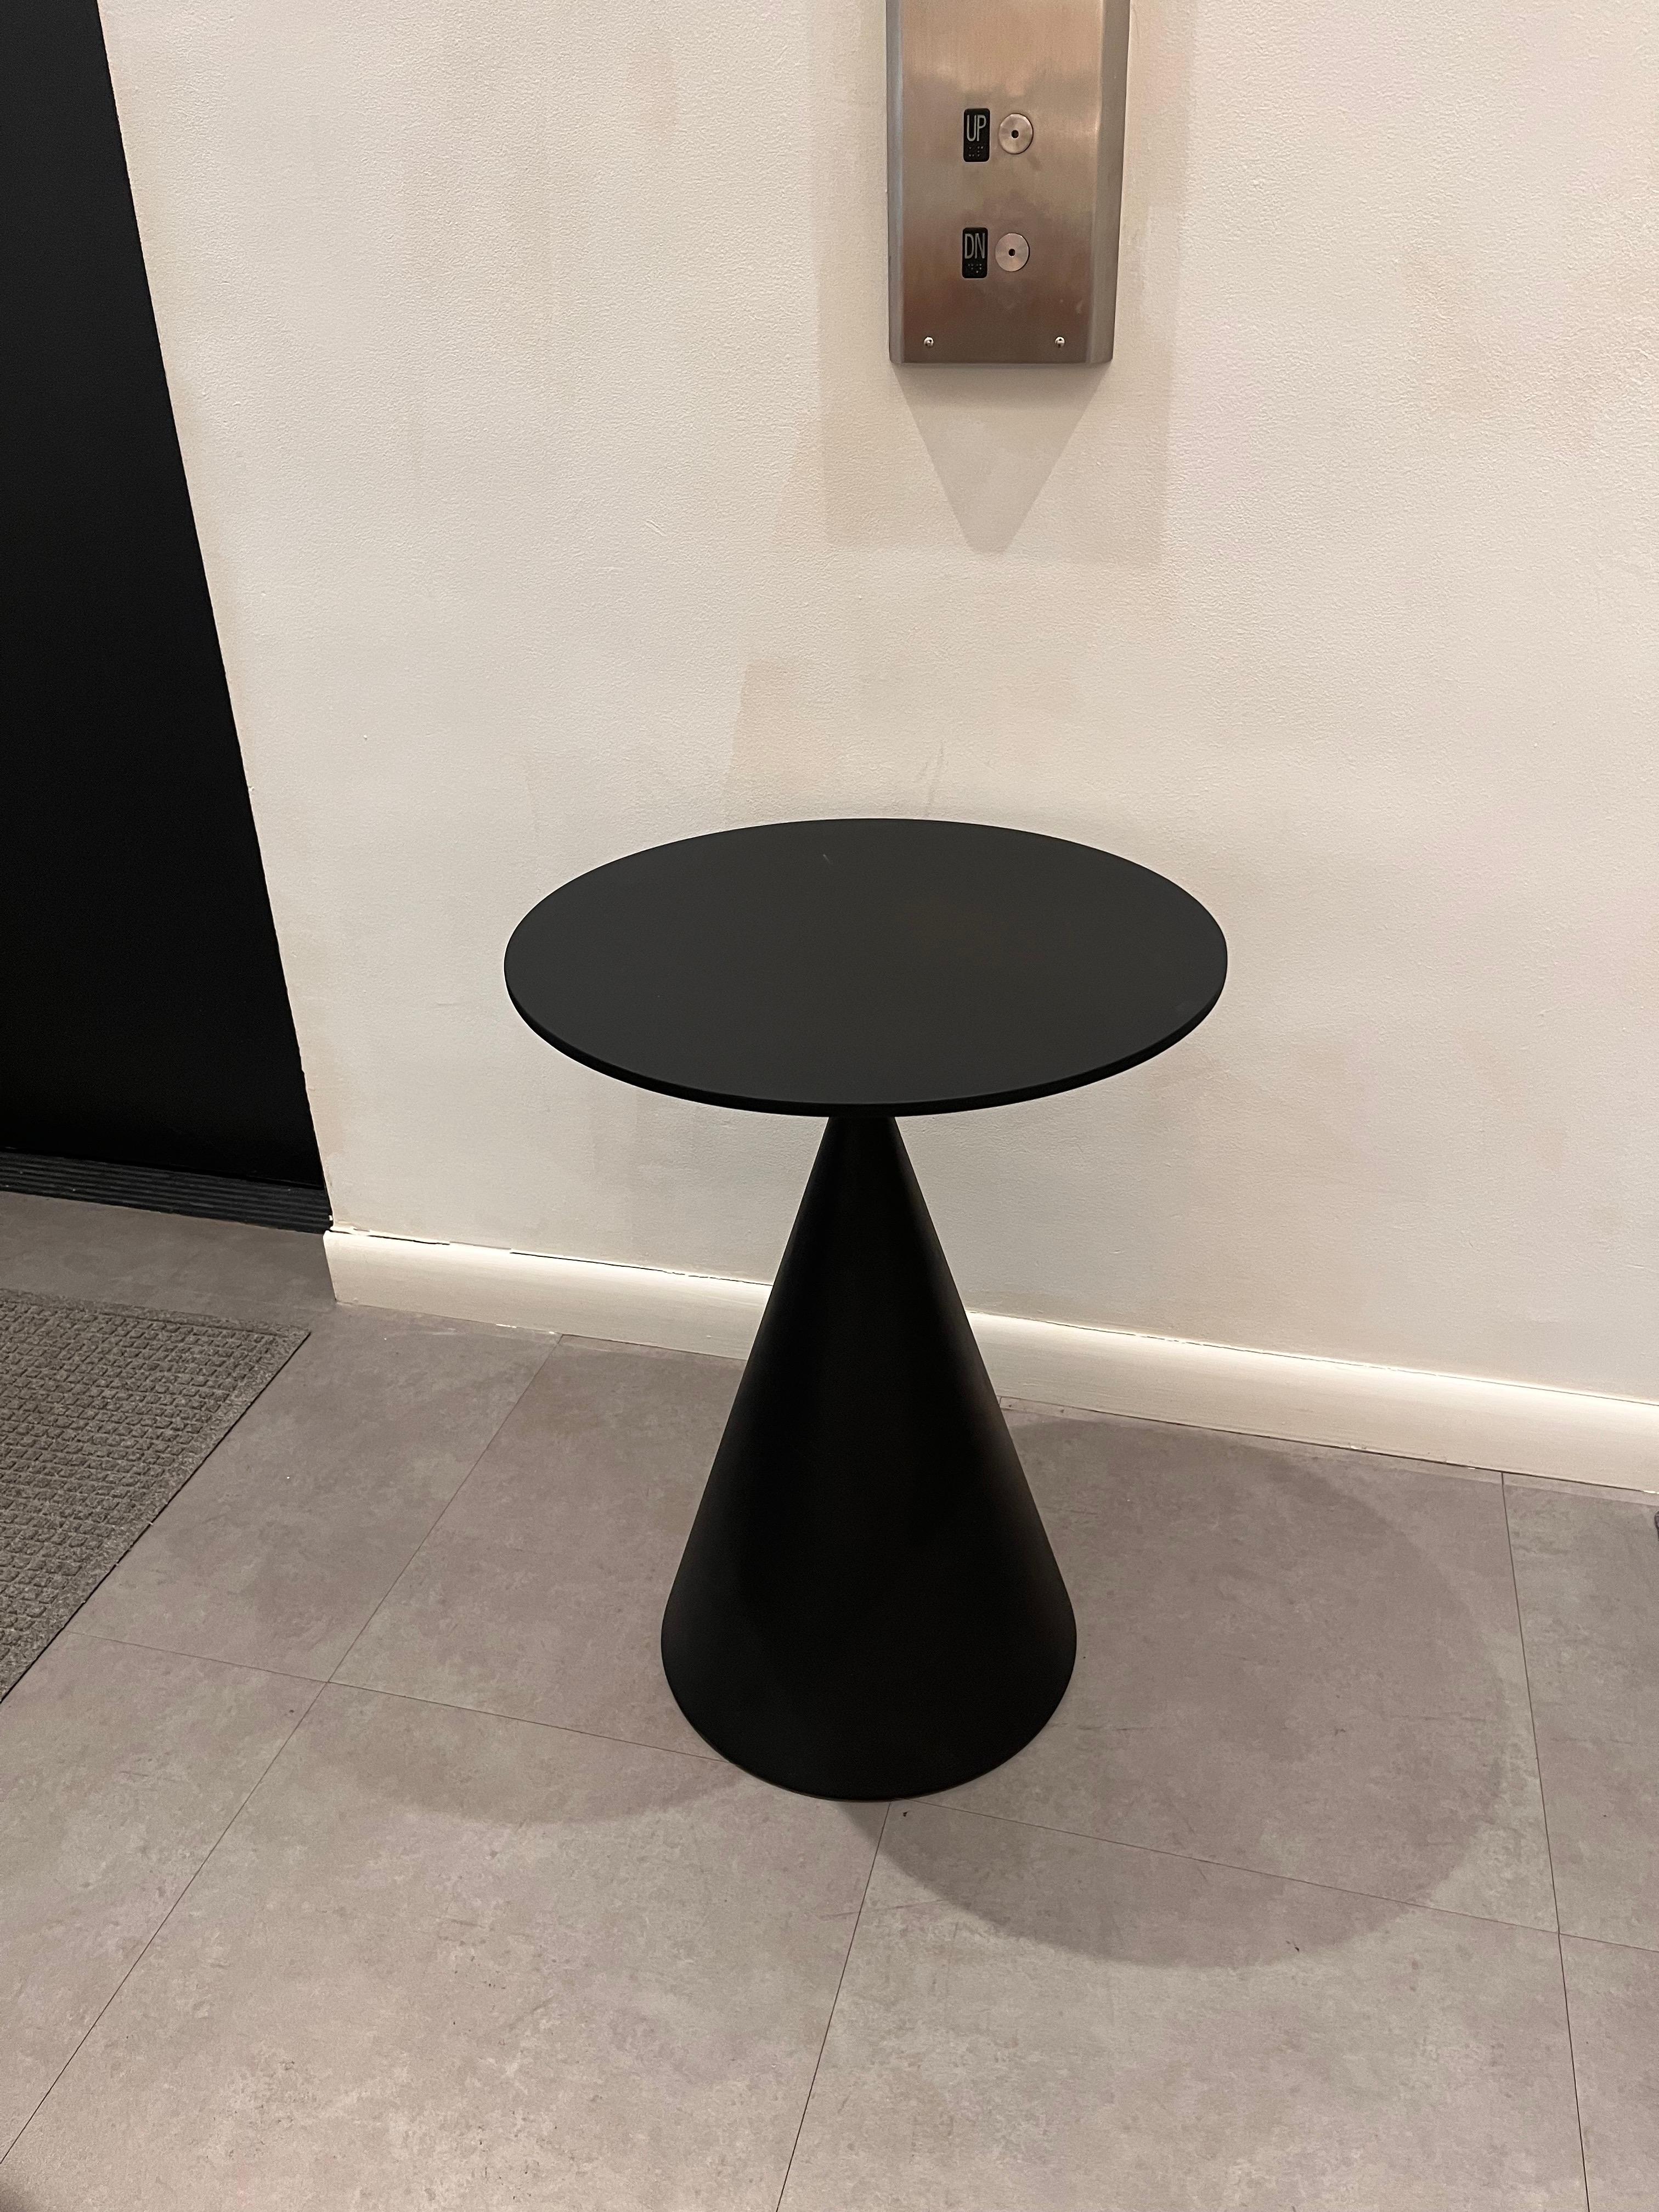 Mini table d'appoint d'intérieur en terre cuite
béton noir d66

Dessus en céramique de 6 mm avec filet de sécurité en dessous.
Des formes géométriques et un équilibre parfait, toujours un classique du design contemporain international. La jeune